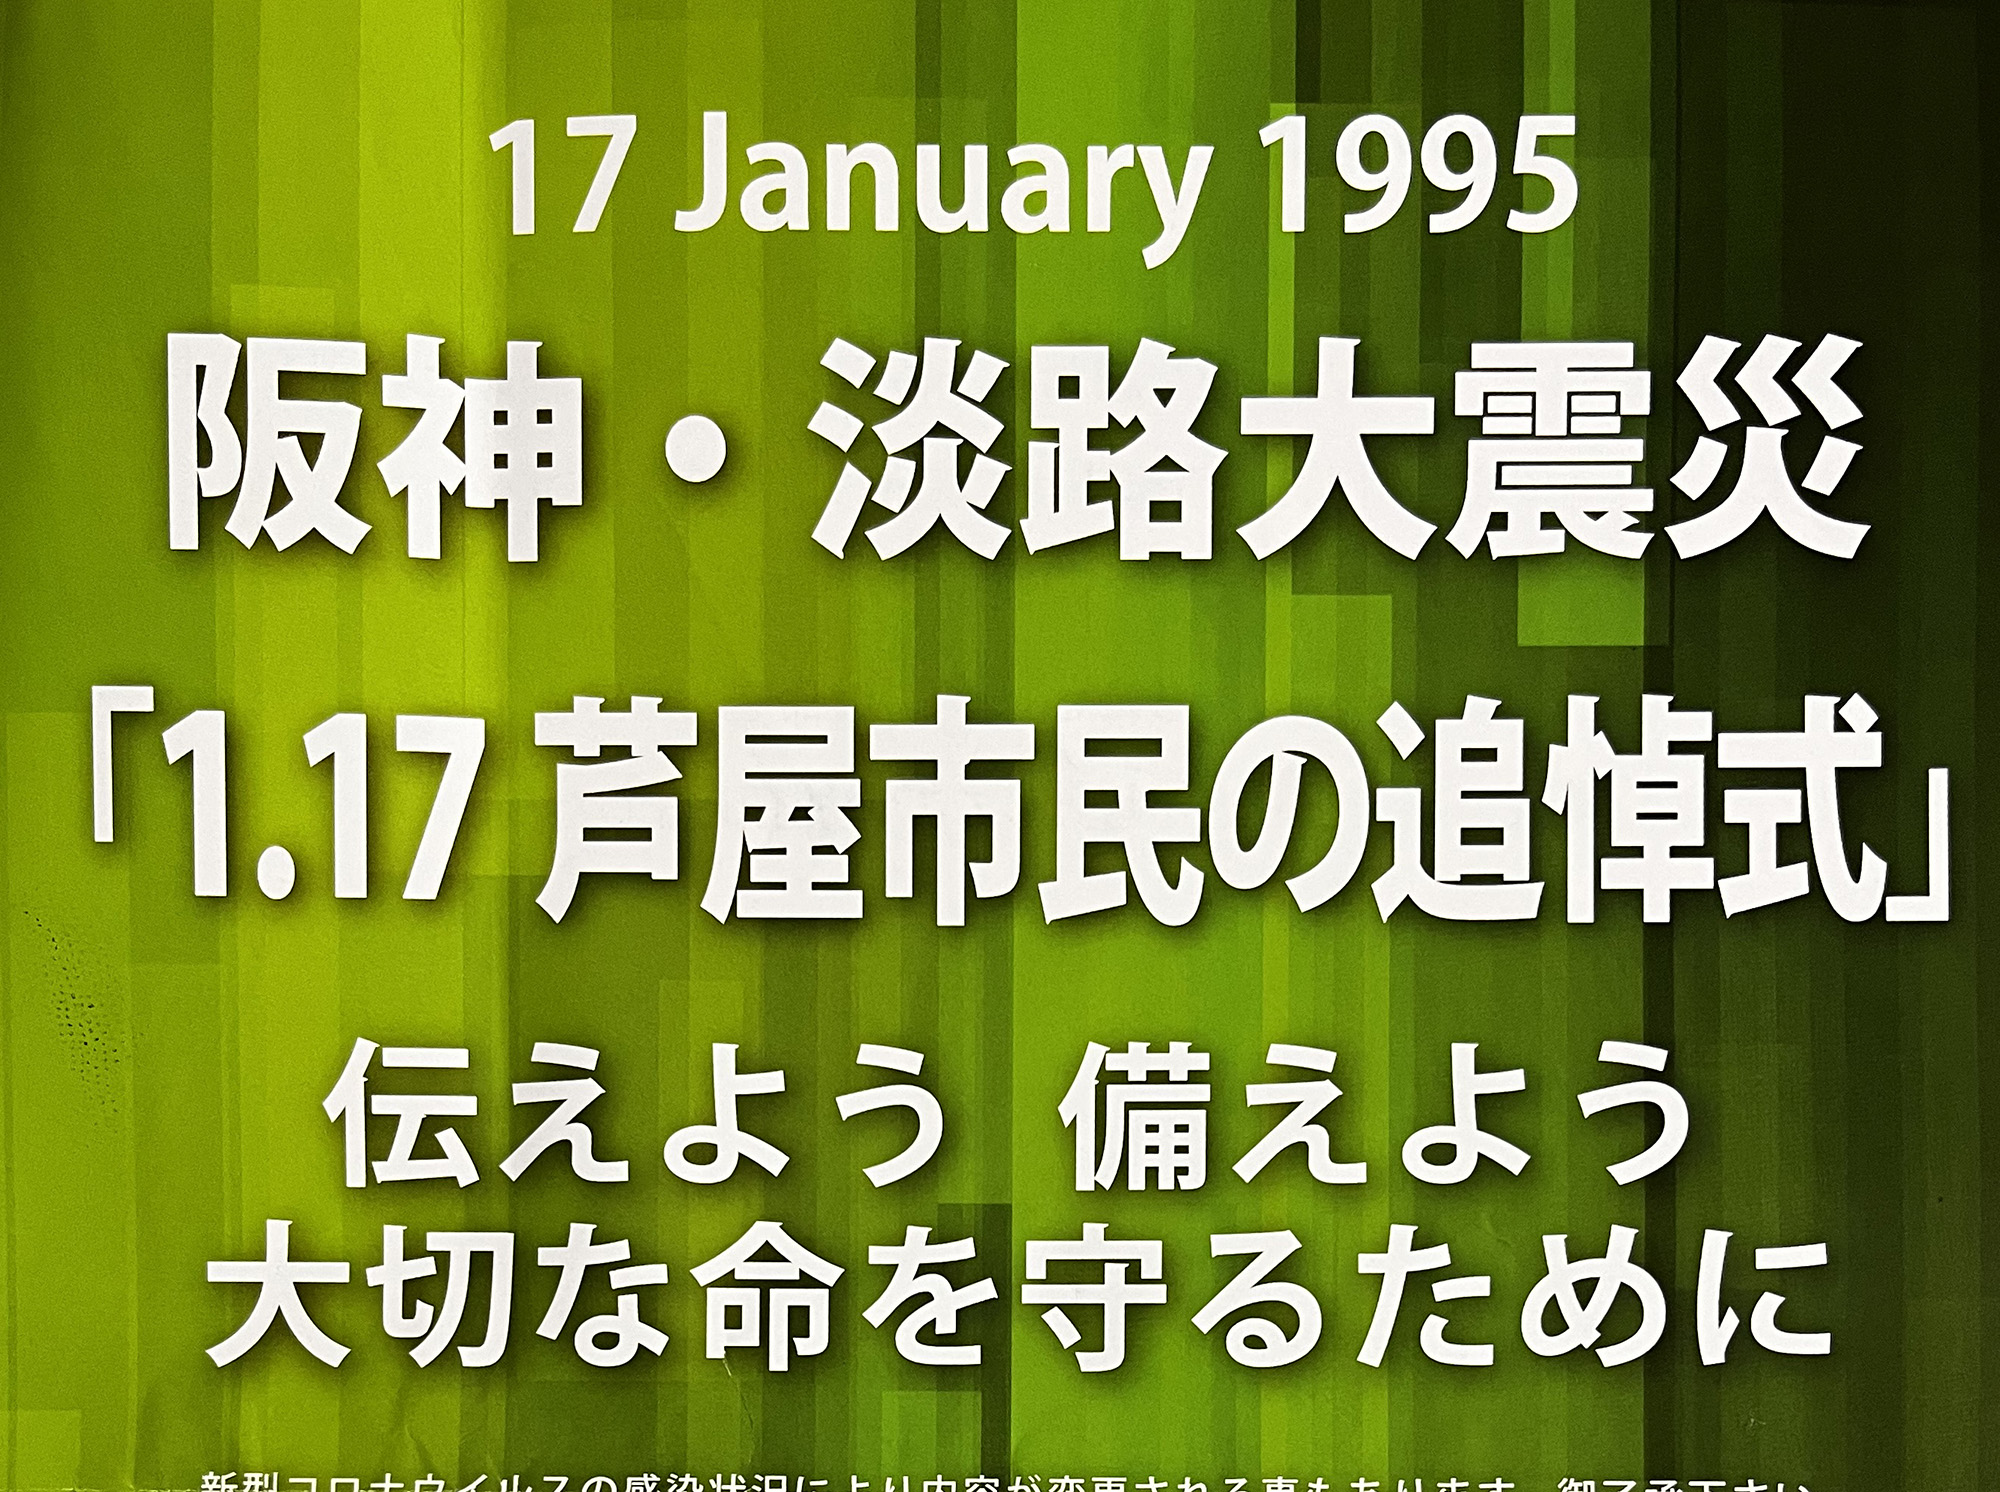 2022年1月17日 阪神・淡路大震災「1.17芦屋市民の追悼式」